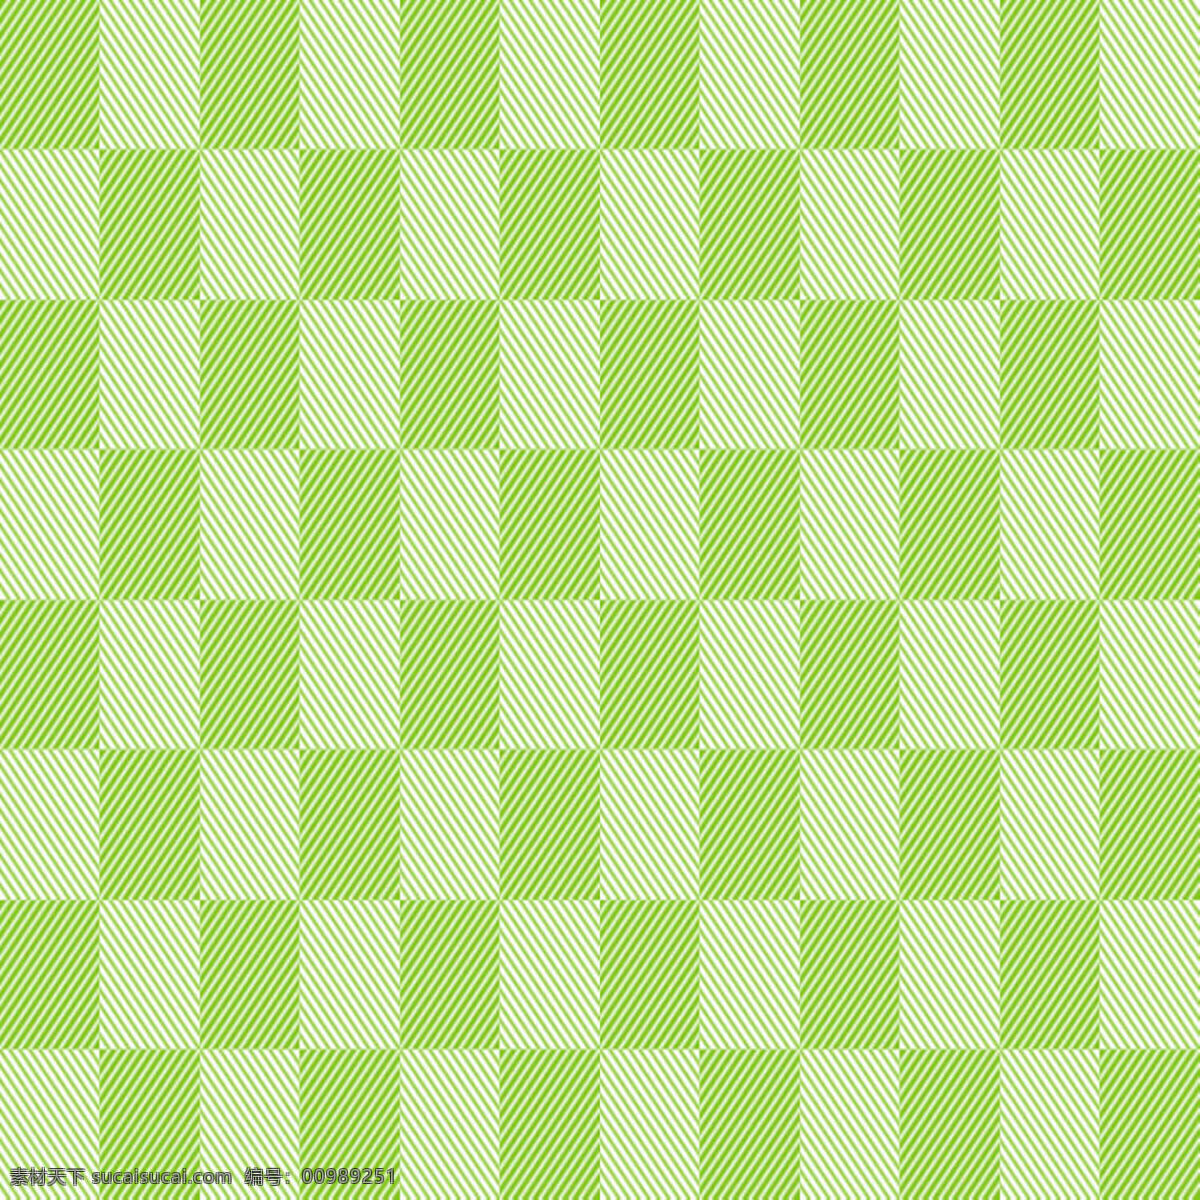 绿 白相 间 布纹 纹理 纹理素材 纹路背景 绿白相间 背景图片